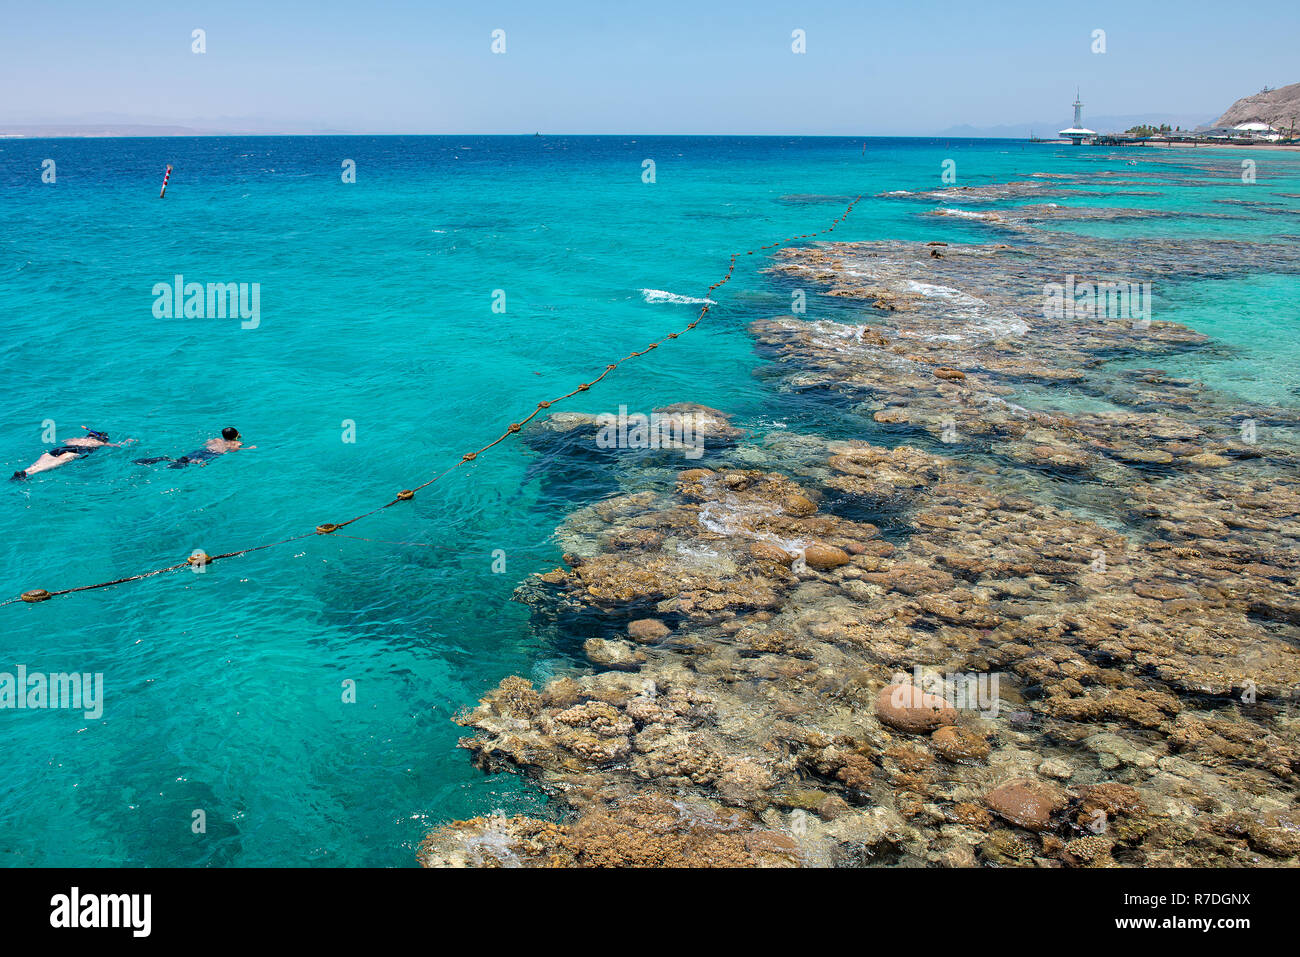 Türkisblauem Wasser und Unterwasser Korallen entlang leeren Strand im beliebten Ferienort Eilat am Roten Meer in Israel. Stockfoto